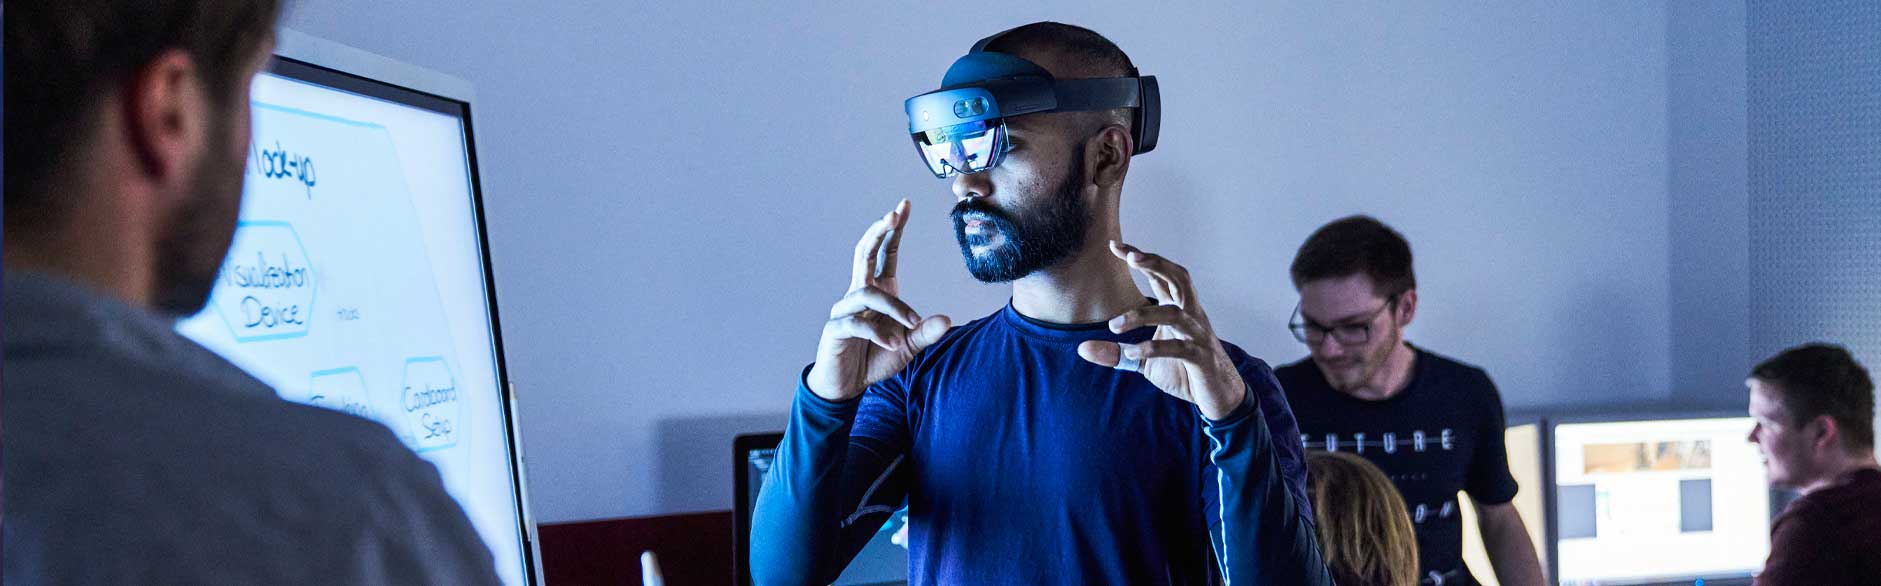 Mann mit AR-Brille an einem Monitor greift ein virtuelles Objekt.